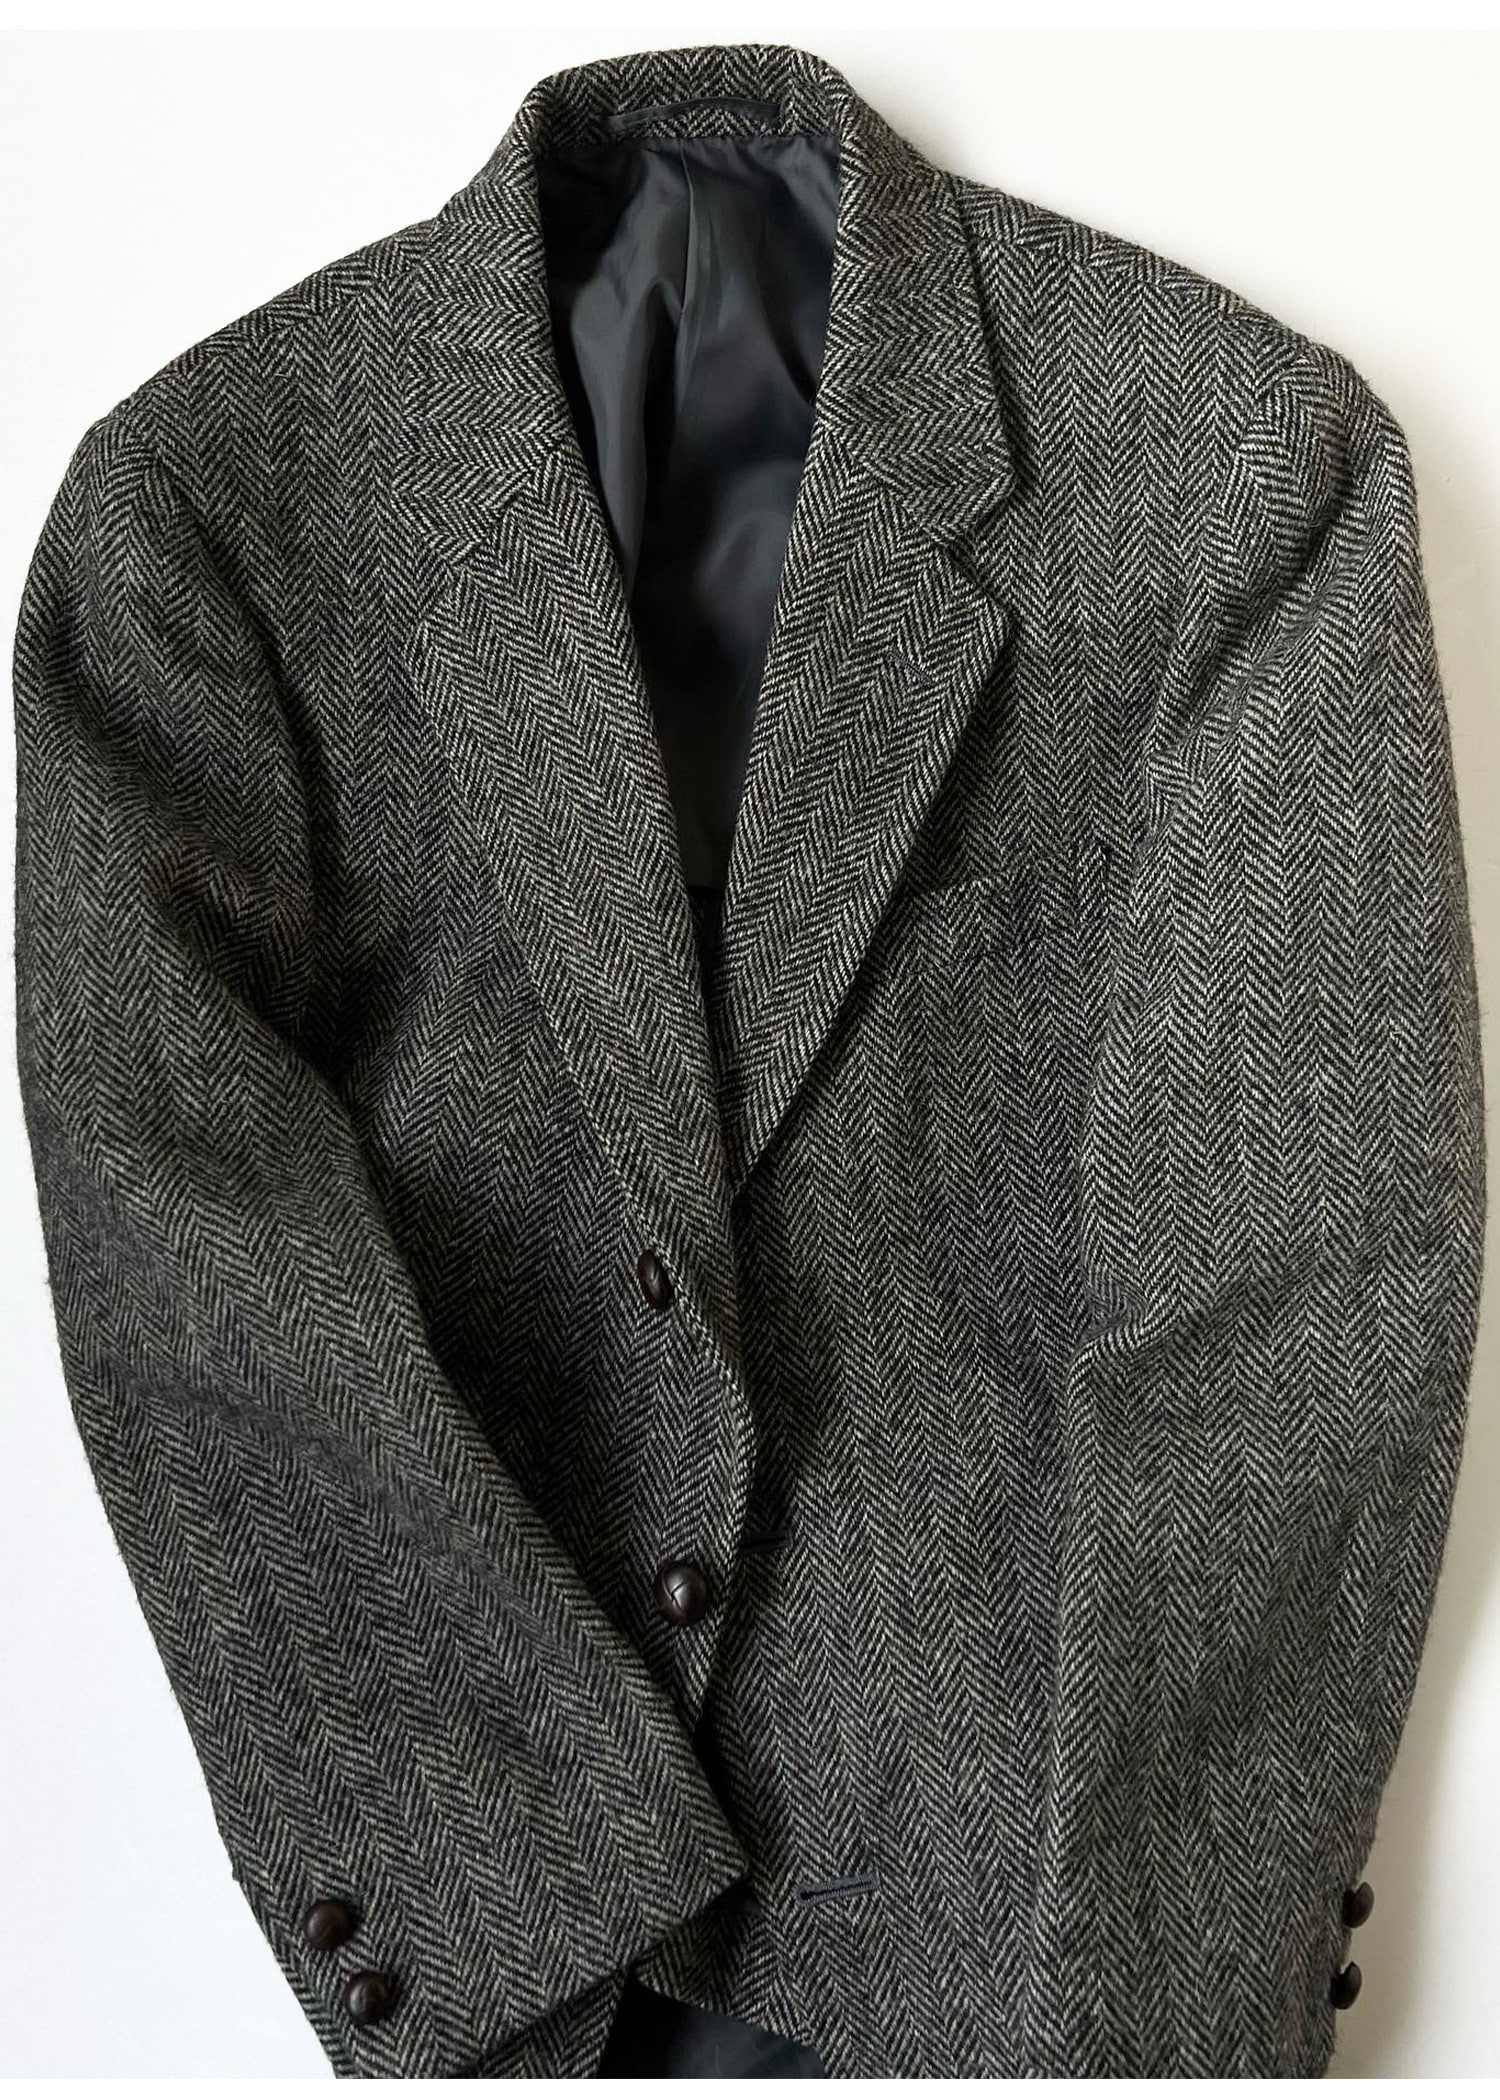 J.PRESS herringbone tweed jacket